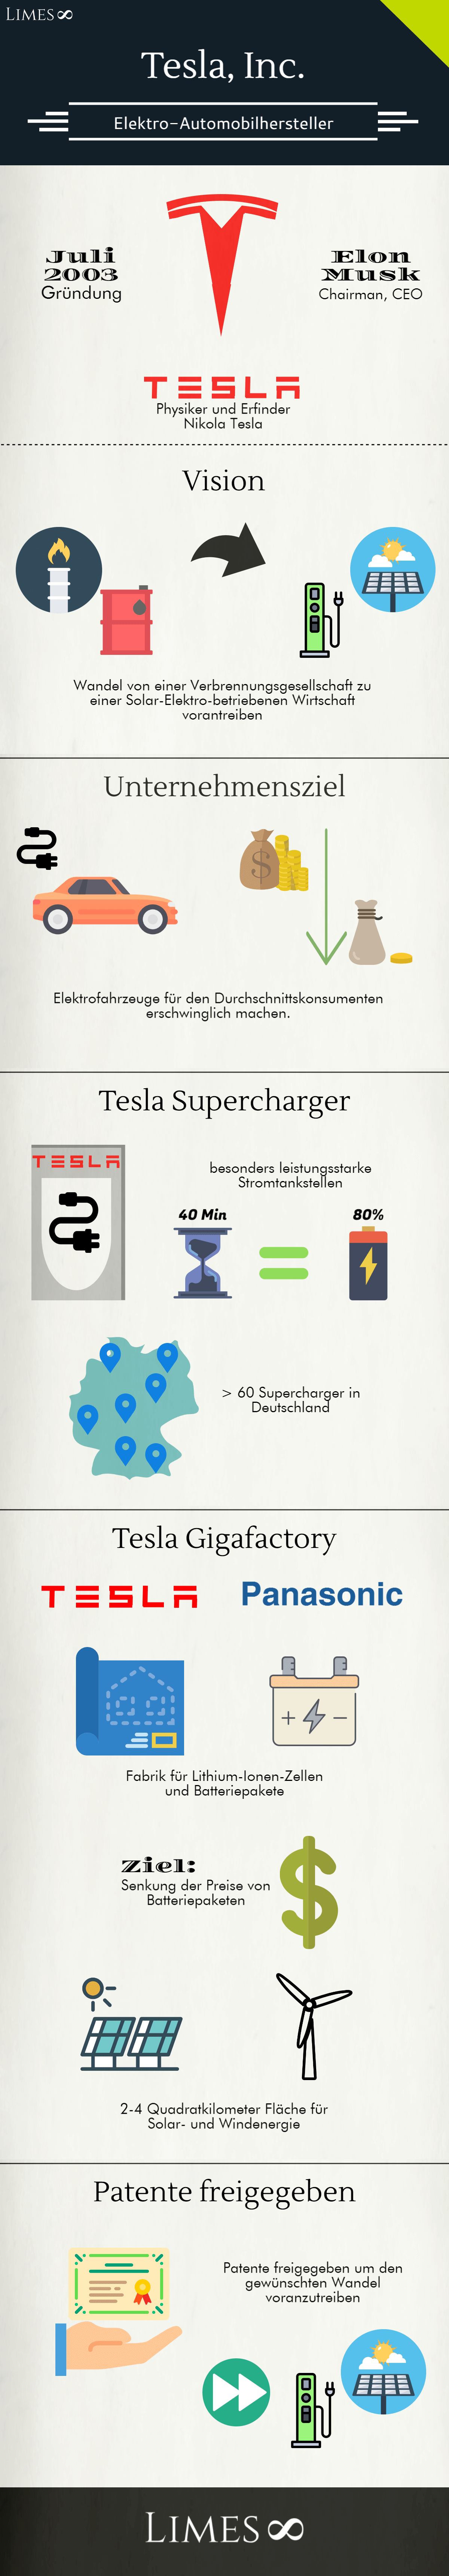 Infografik über die Tesla Inc.